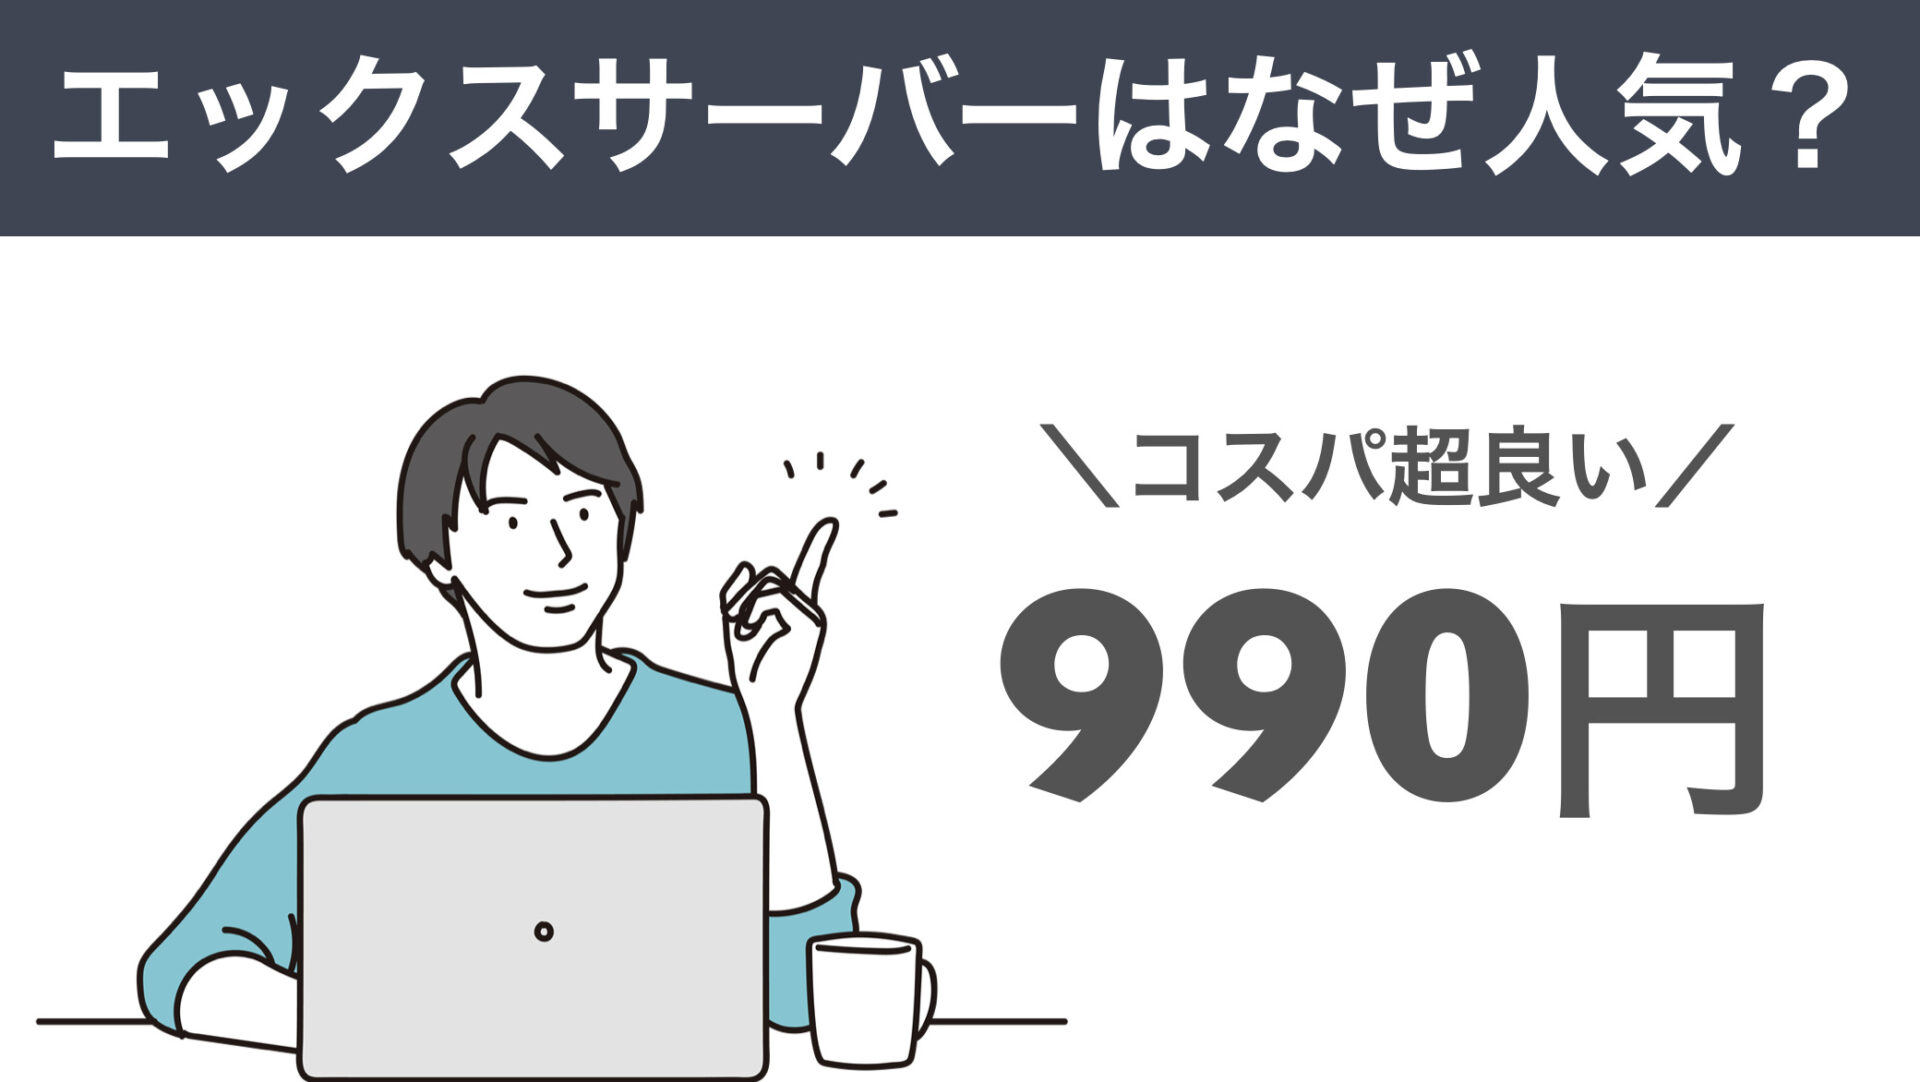 エックスサーバーは業界最安クラスの９９０円でコスパが最強